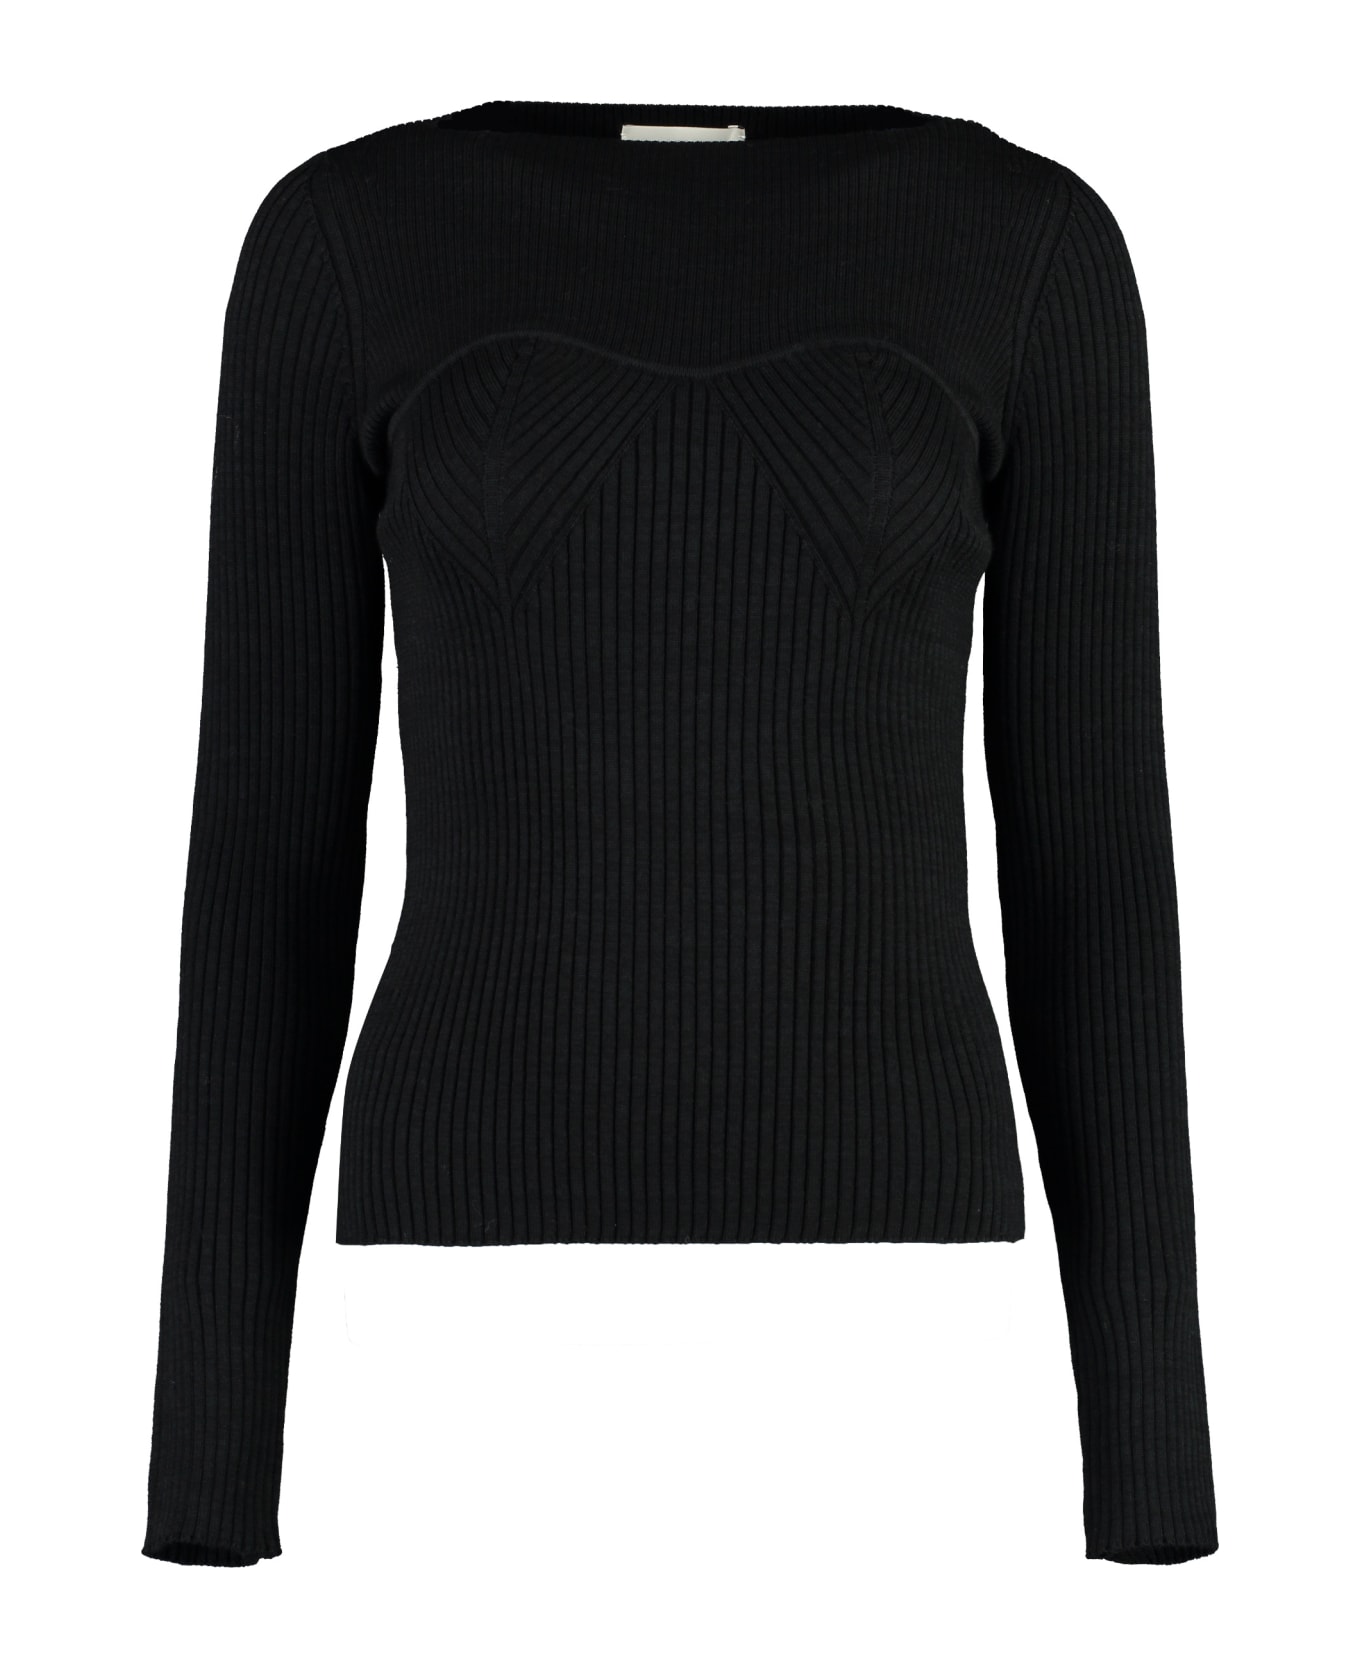 Isabel Marant Zilyae Merino Wool Sweater - black